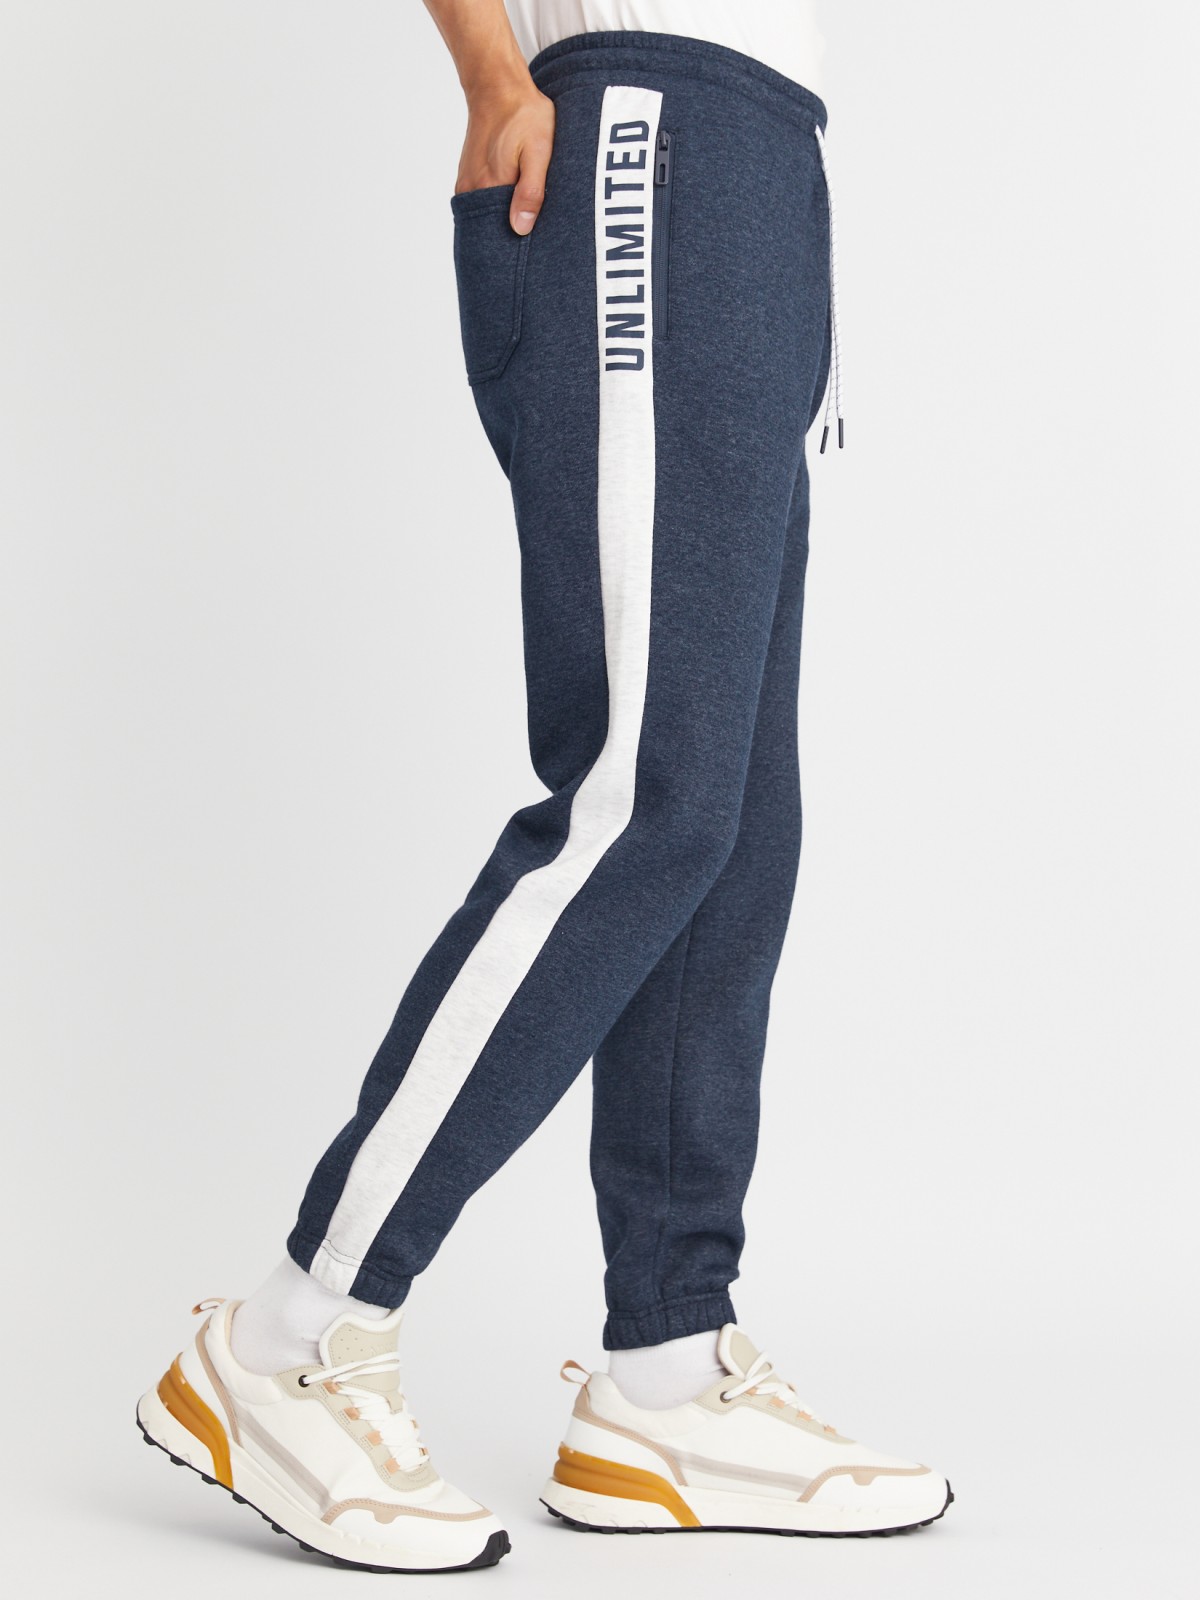 Утеплённые трикотажные брюки-джоггеры в спортивном стиле с лампасами zolla 213337660013, цвет голубой, размер L - фото 3